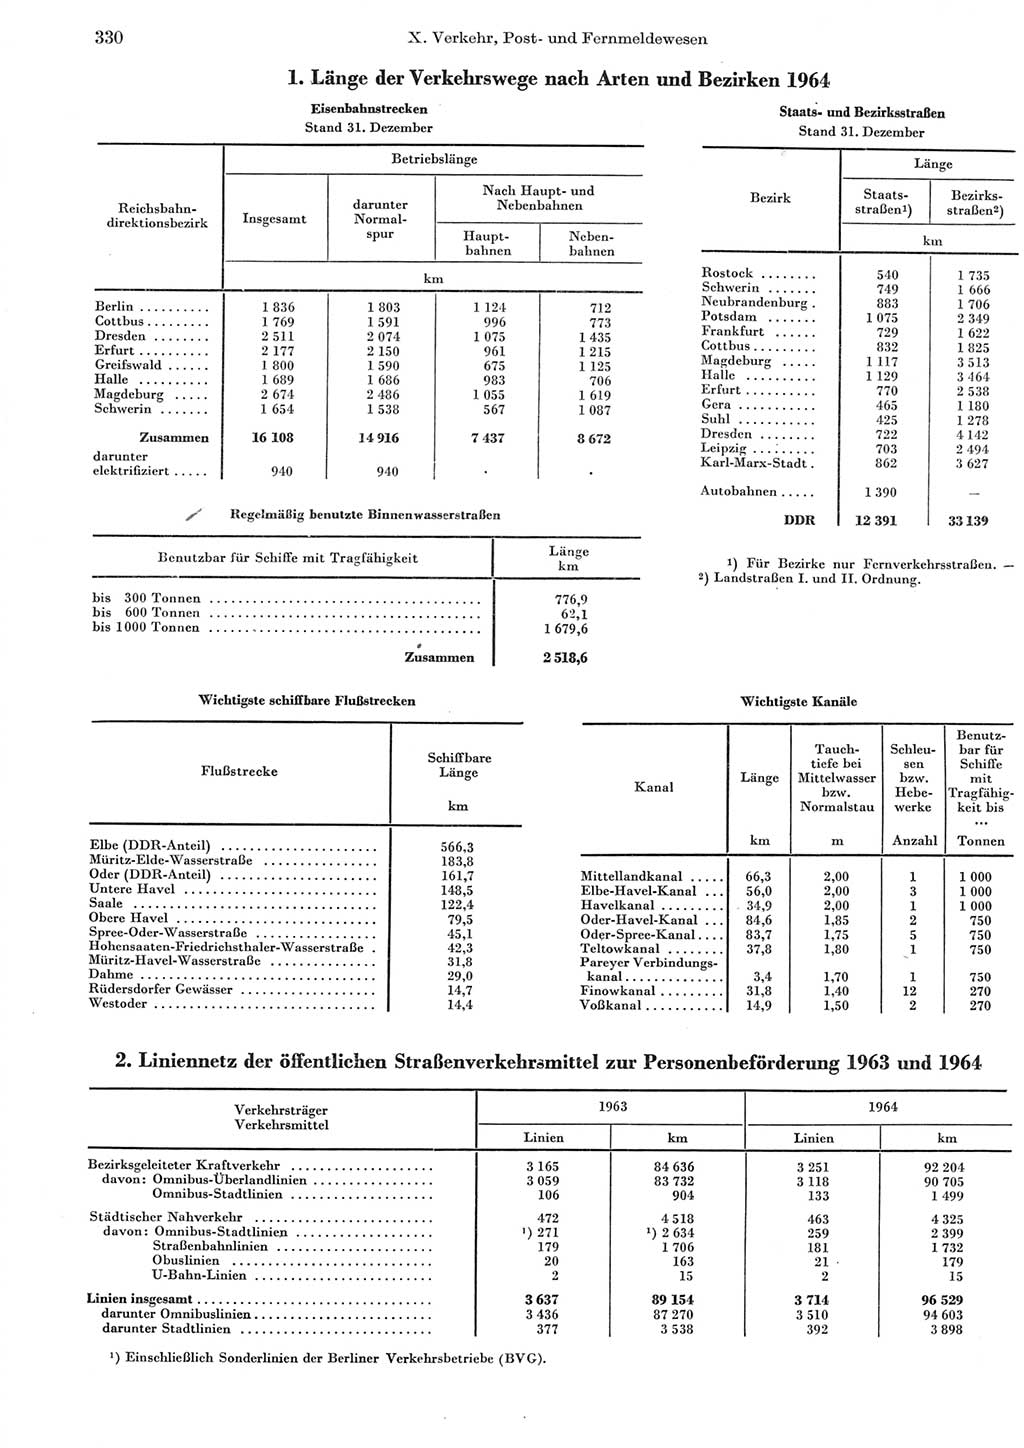 Statistisches Jahrbuch der Deutschen Demokratischen Republik (DDR) 1965, Seite 330 (Stat. Jb. DDR 1965, S. 330)